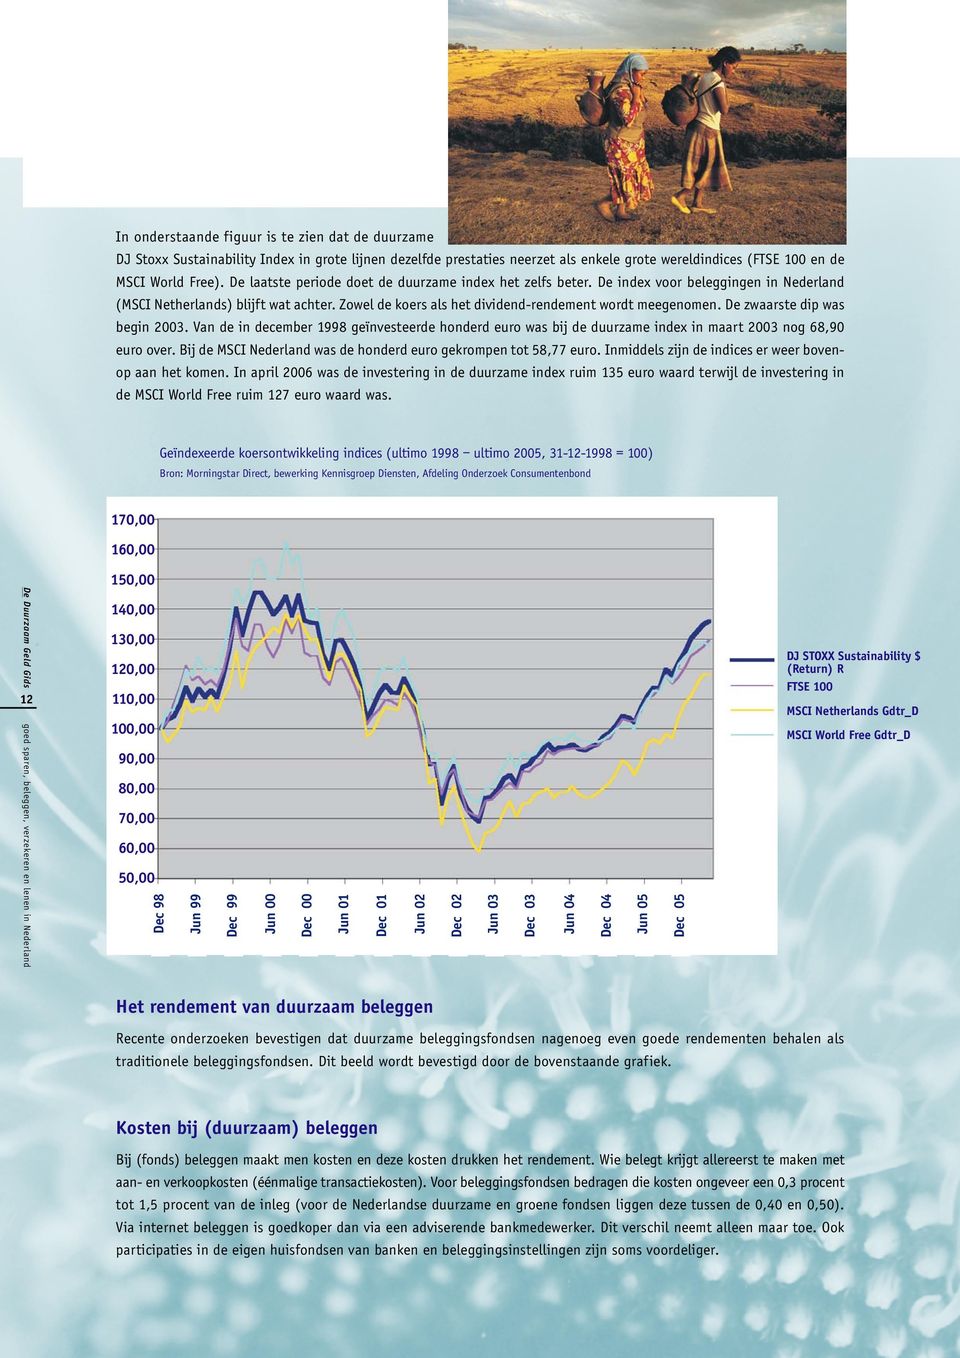 De zwaarste dip was begin 2003. Van de in december 1998 geïnvesteerde honderd euro was bij de duurzame index in maart 2003 nog 68,90 euro over.